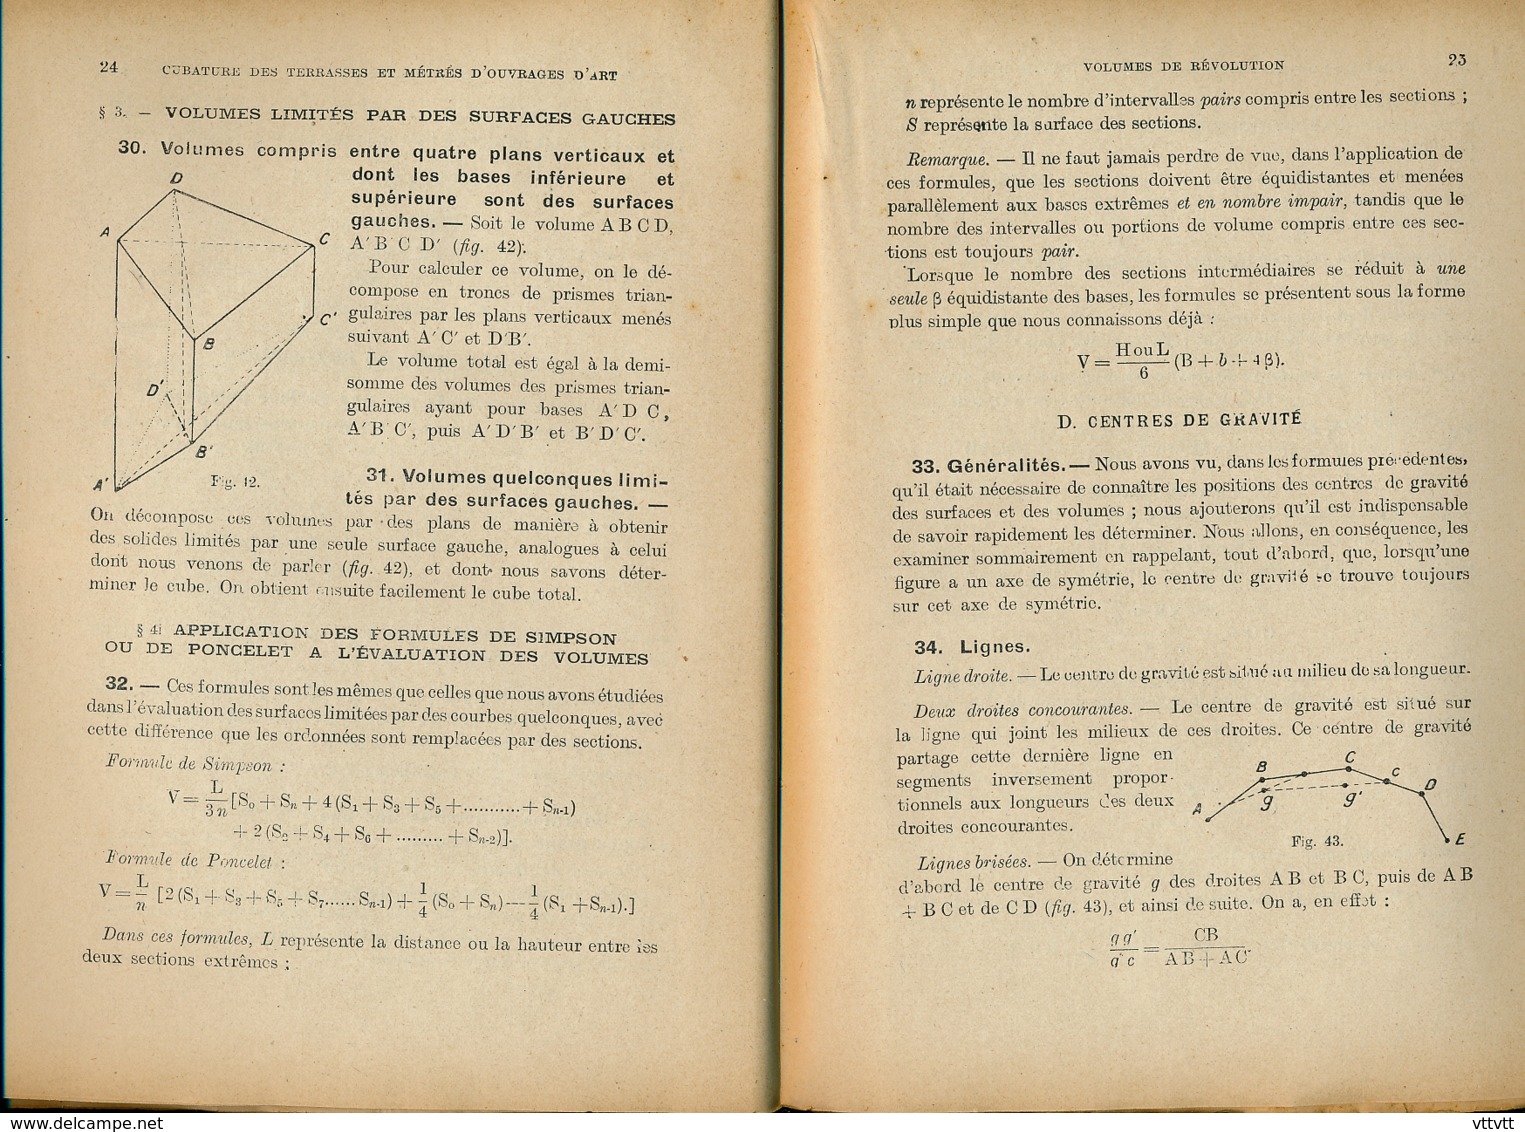 "Notions sur le Métré" (1925), Ecole Spéciale des Travaux Publics, Professeur M. Deloupe, 250 pages, Septième édition...